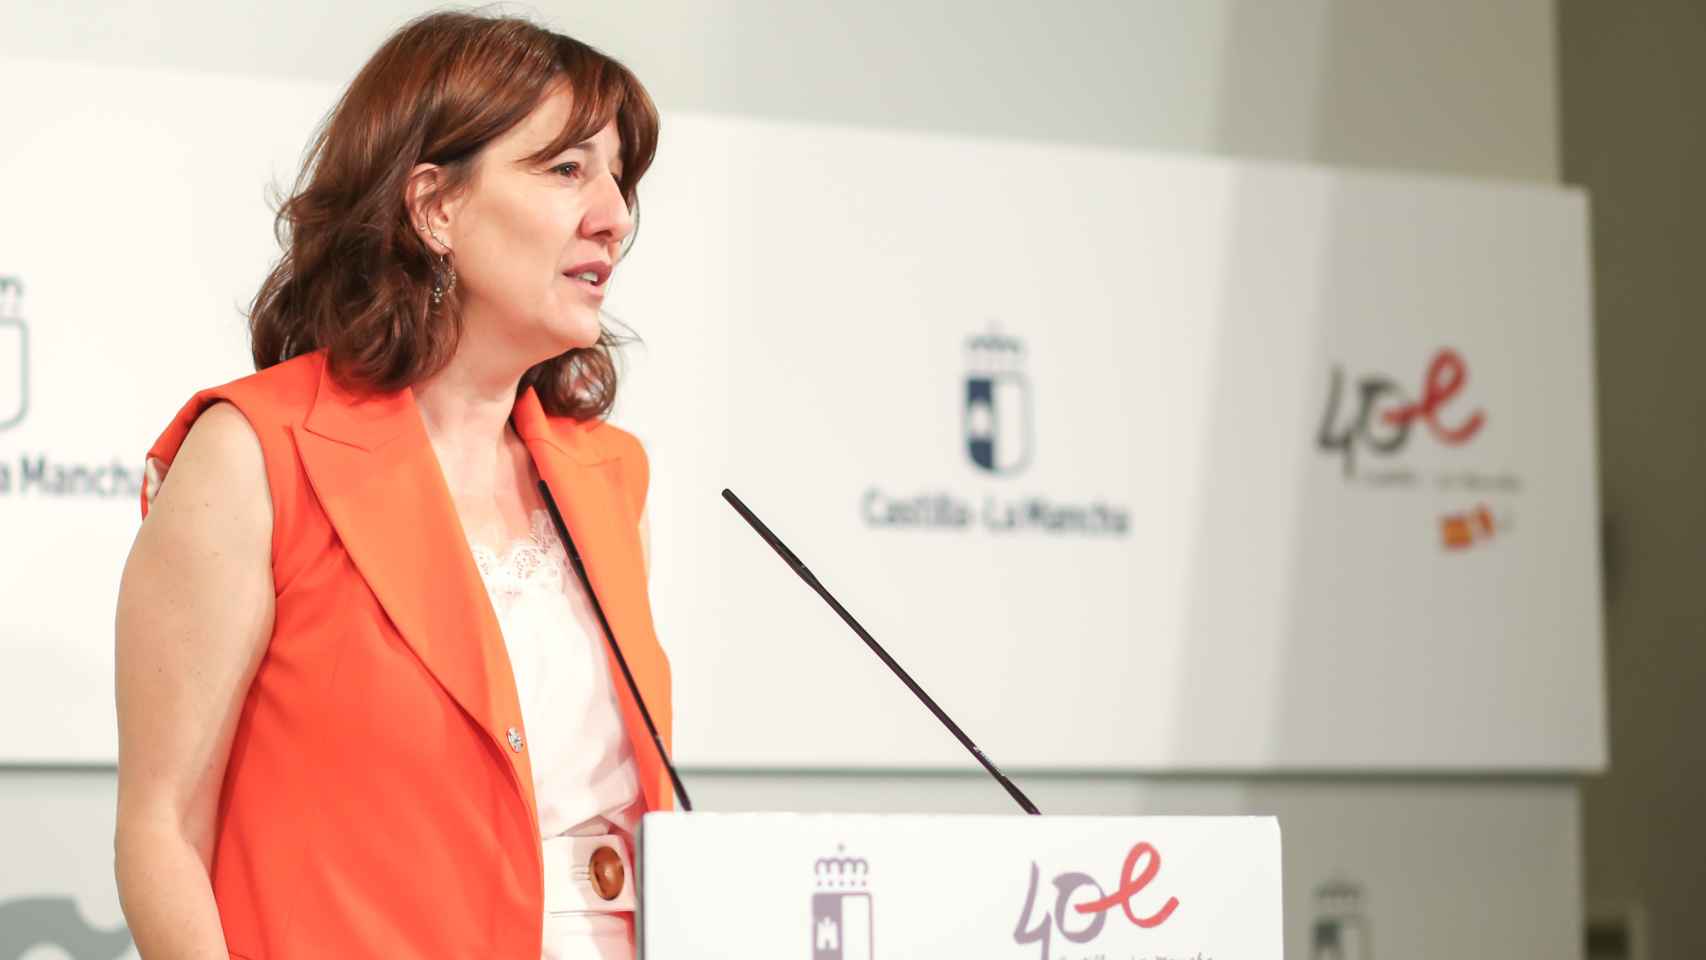 Blanca Fernández en rueda de prensa para dar cuenta de los acuerdos aprobados en el Consejo de Gobierno